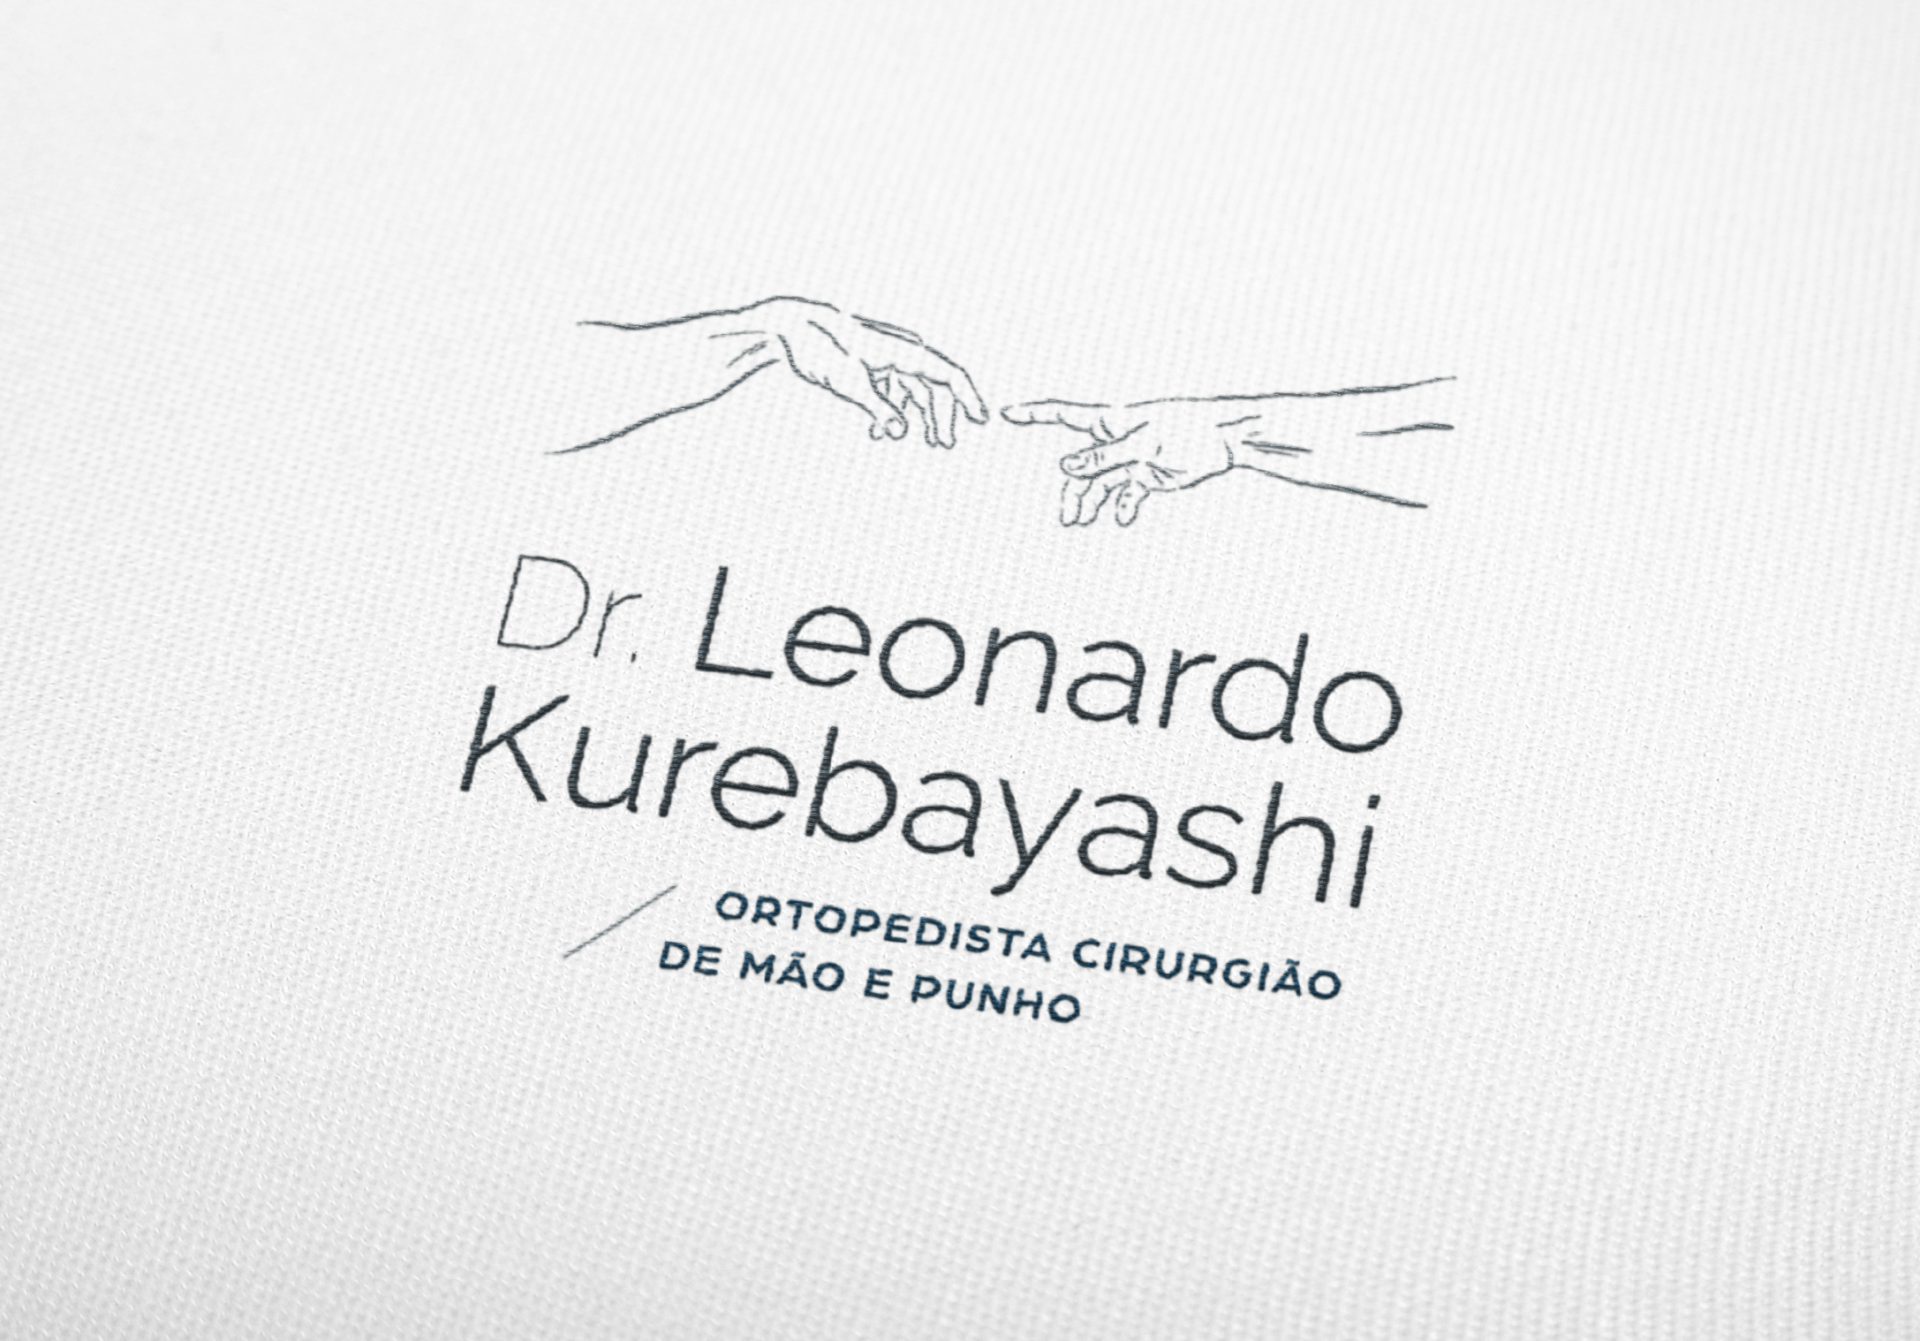 Logotipo do Dr. Leonardo Kurebayashi aplicado em tecido de jaleco médico, em alto relevo.